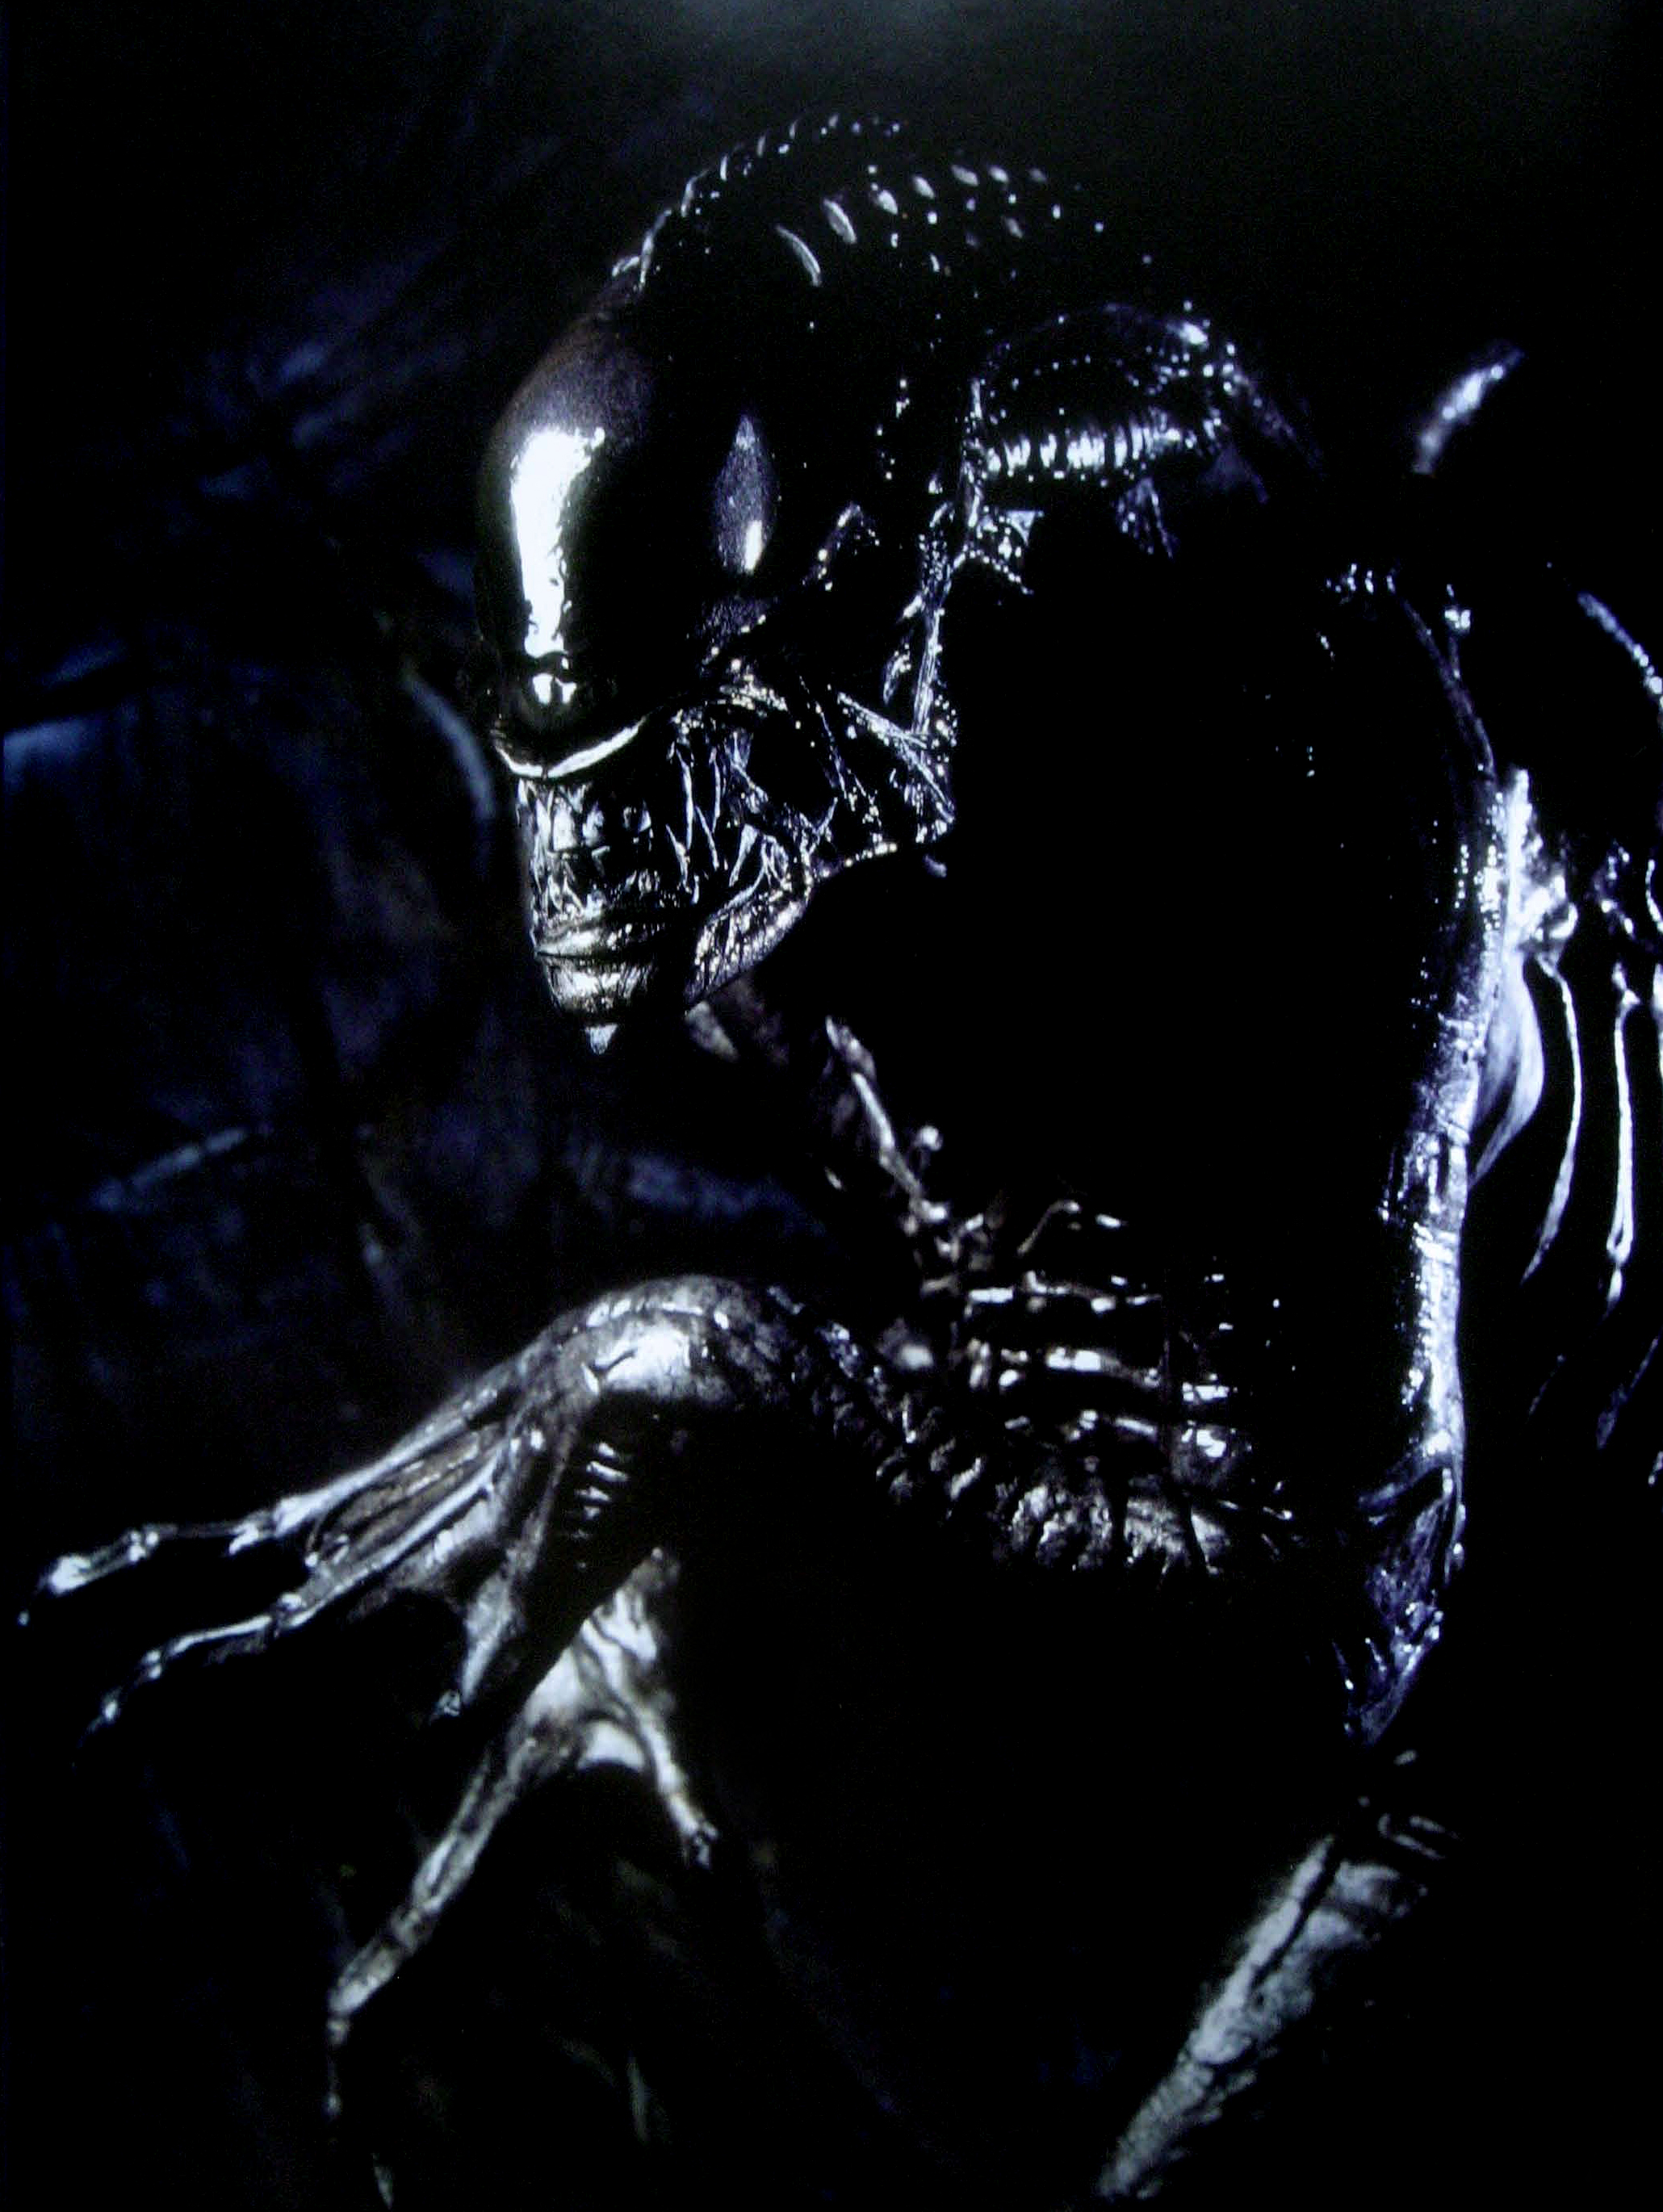 Aliens Vs. Predator: Requiem Backgrounds on Wallpapers Vista